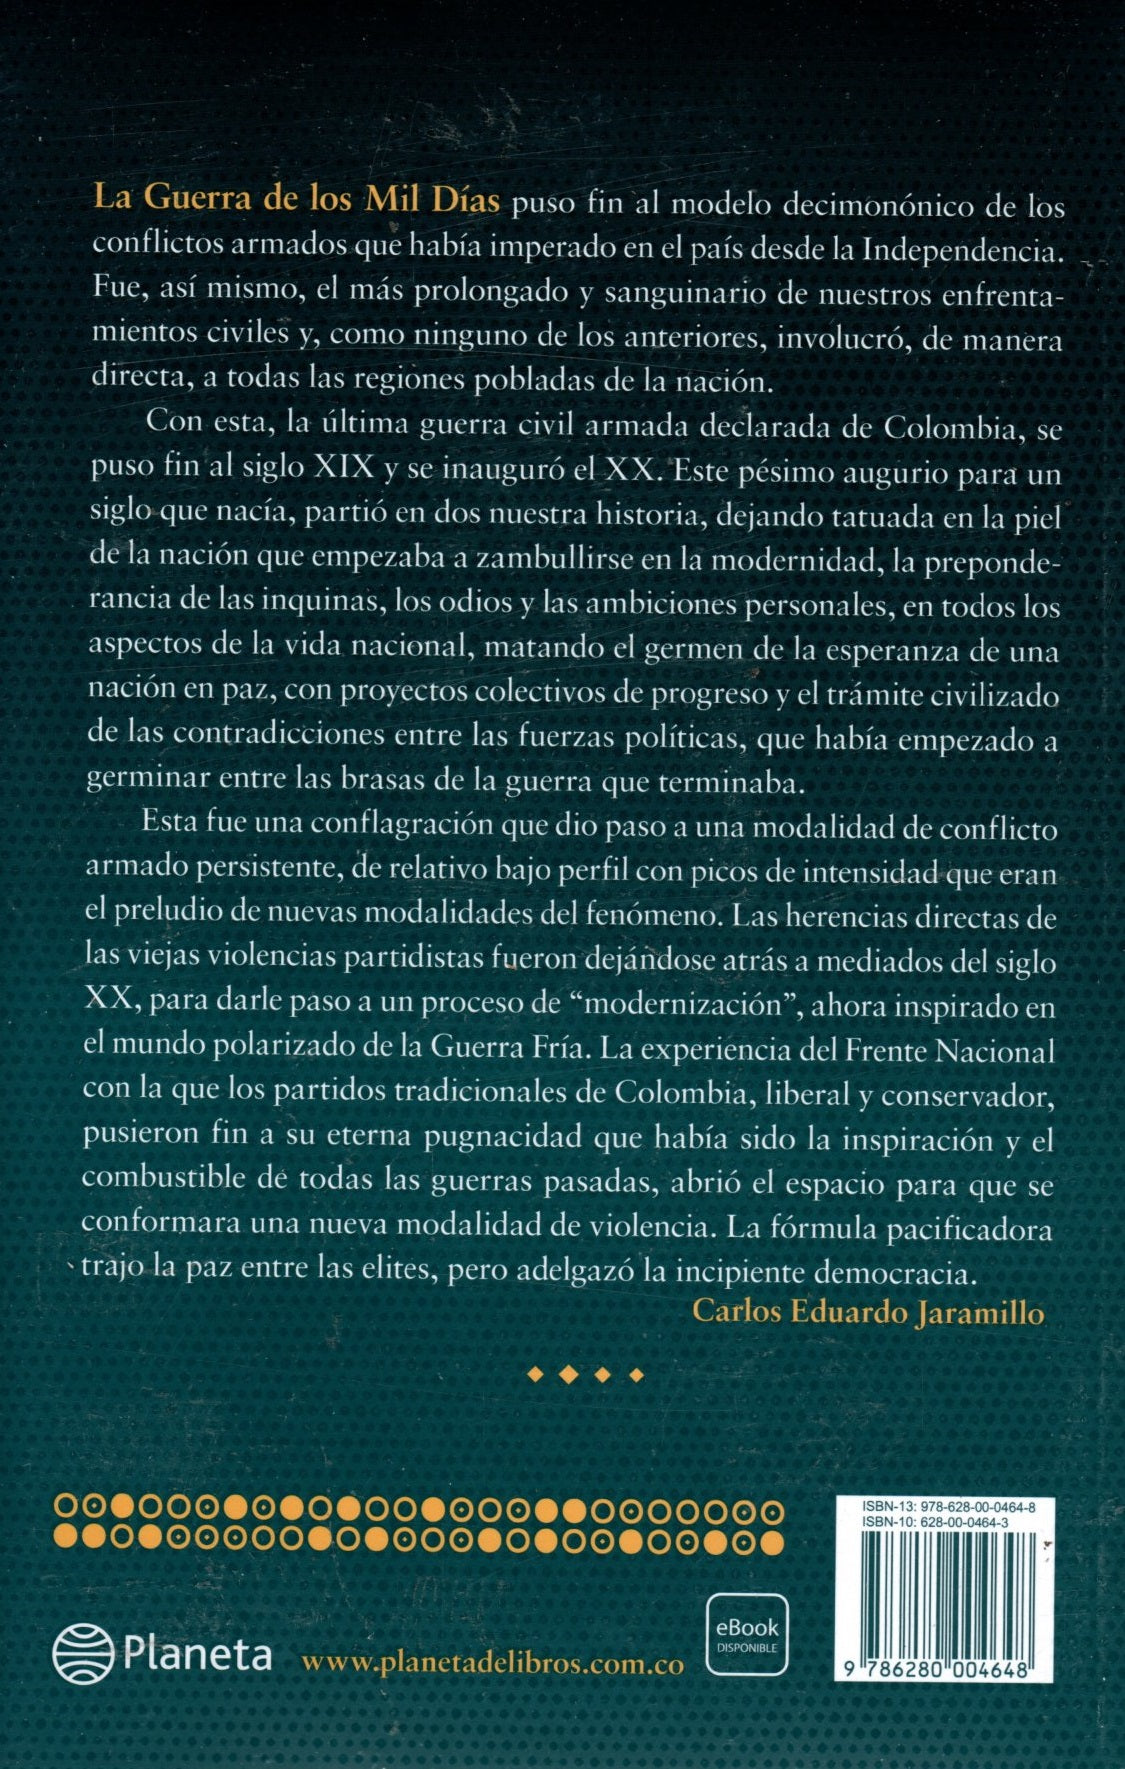 Libro Carlos Eduardo Jaramillo - Los guerrilleros del novecientos